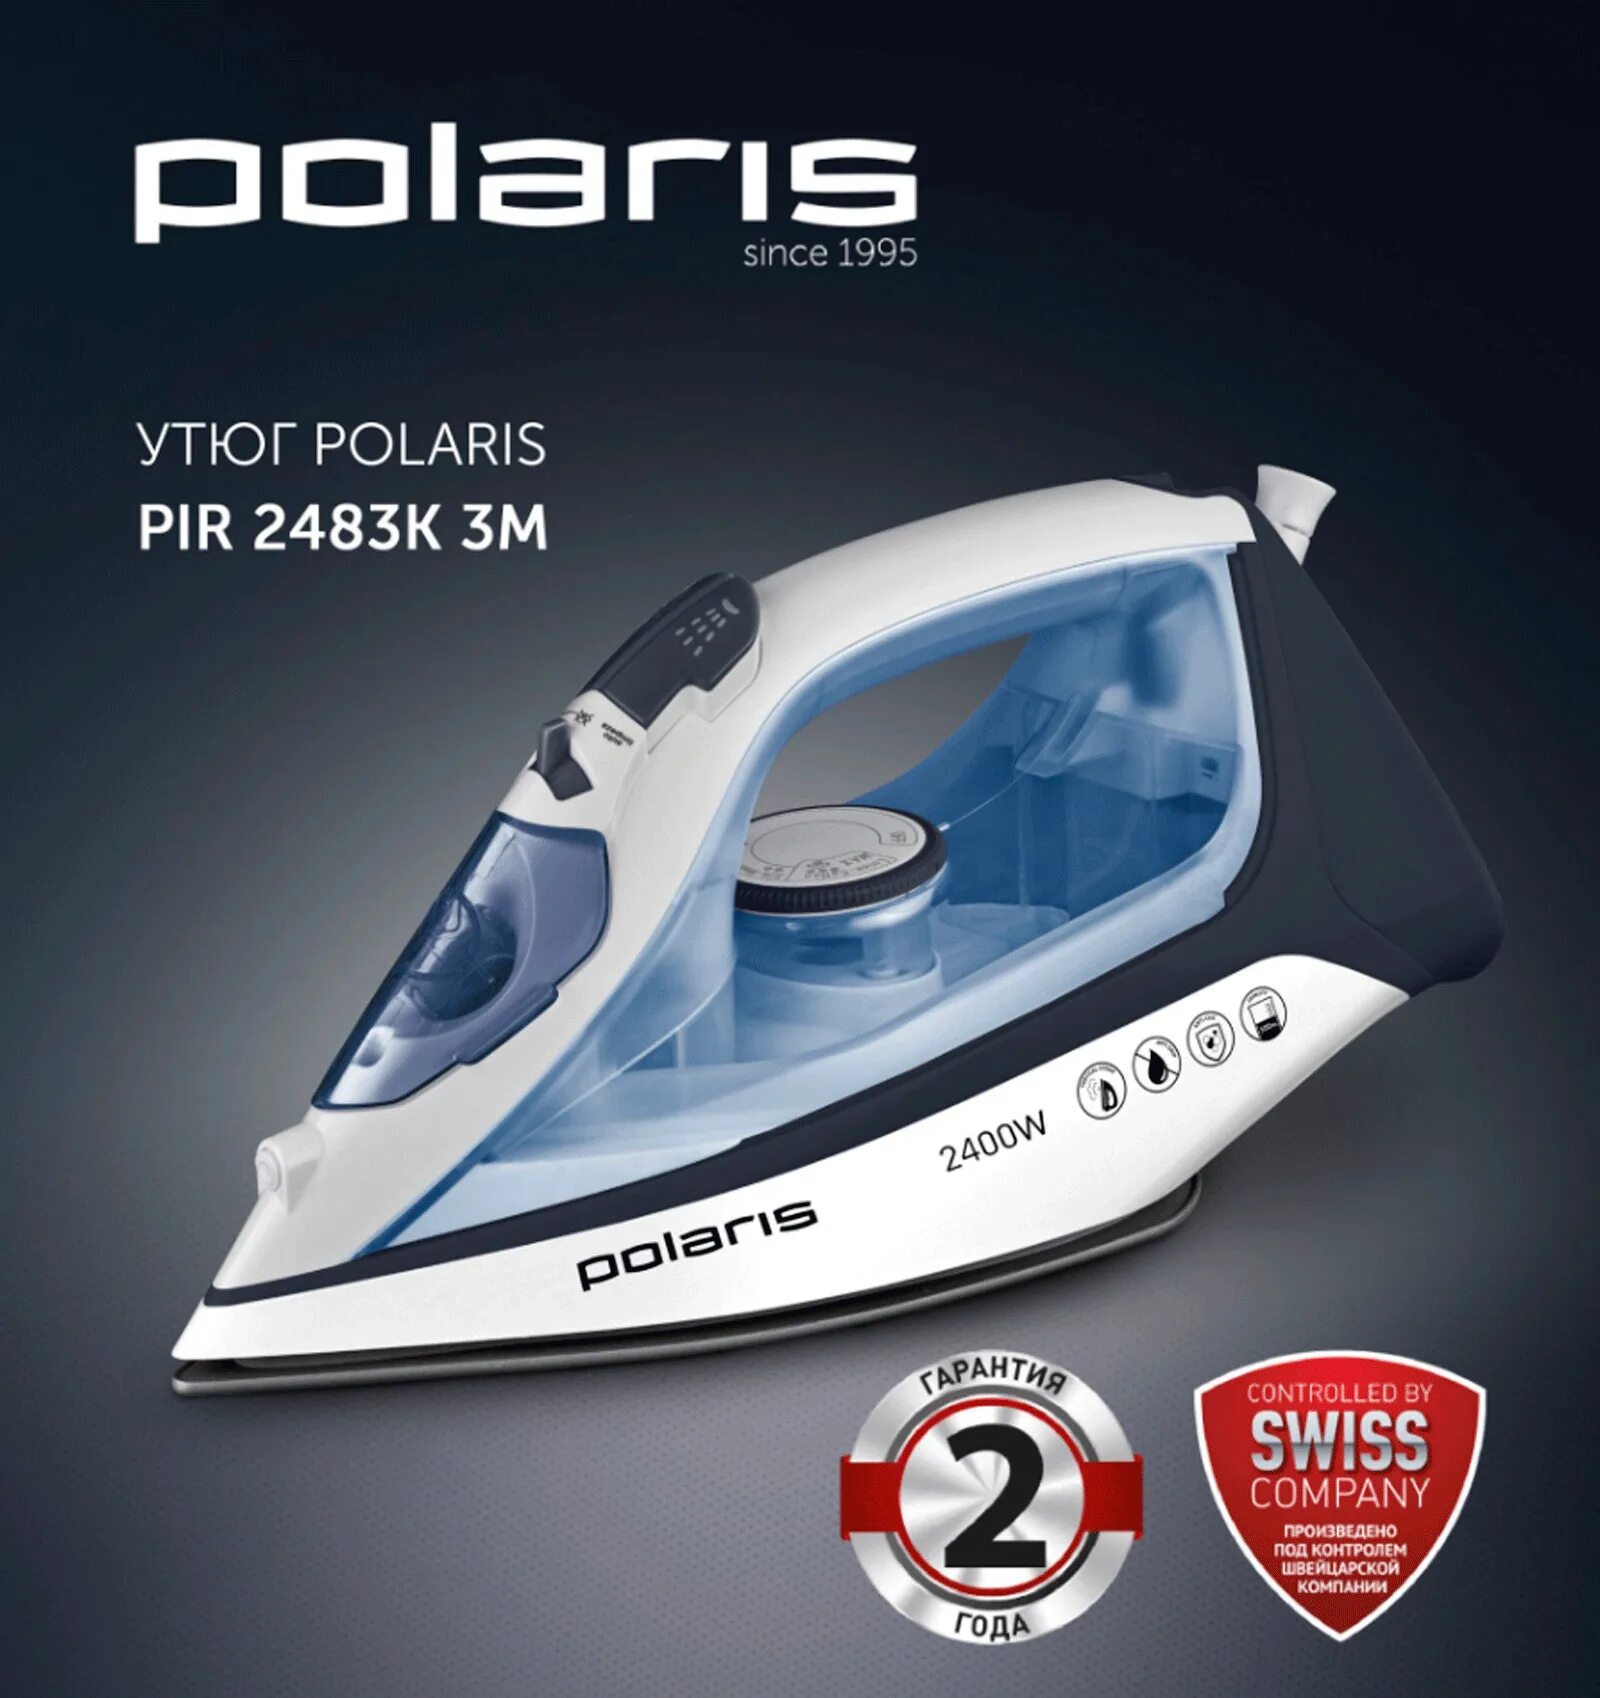 Polaris pir 2483k. Polaris утюг PIR-2483к. Утюг Polaris PIR 2483k 3m, белый, синий. Утюг Polaris PIR 2695ak. Утюг Polaris PIR 2483k, белый, голубой.